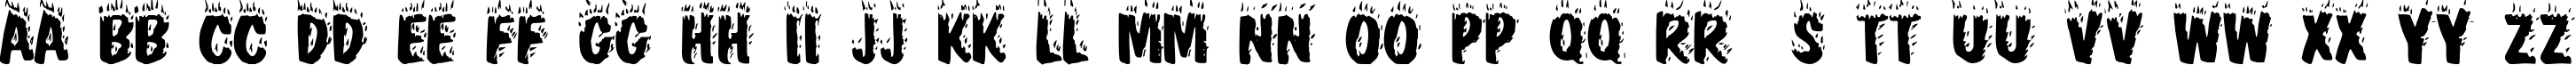 Пример написания английского алфавита шрифтом Blaze